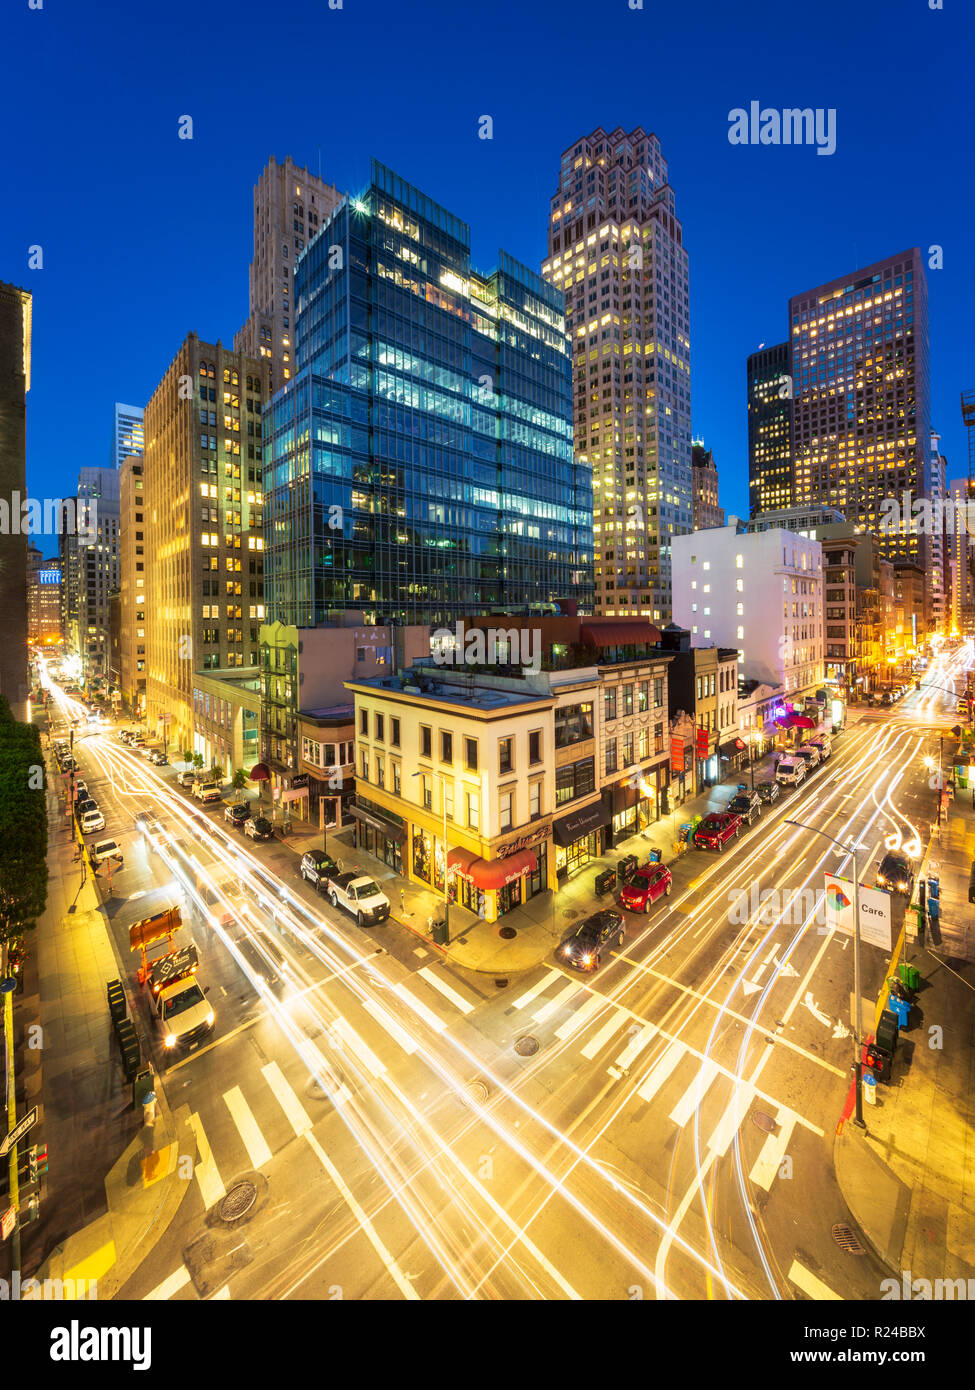 Besetzt Kiefer und Kearny Street bei Nacht, San Francisco, Kalifornien, Vereinigte Staaten von Amerika, Nordamerika Stockfoto